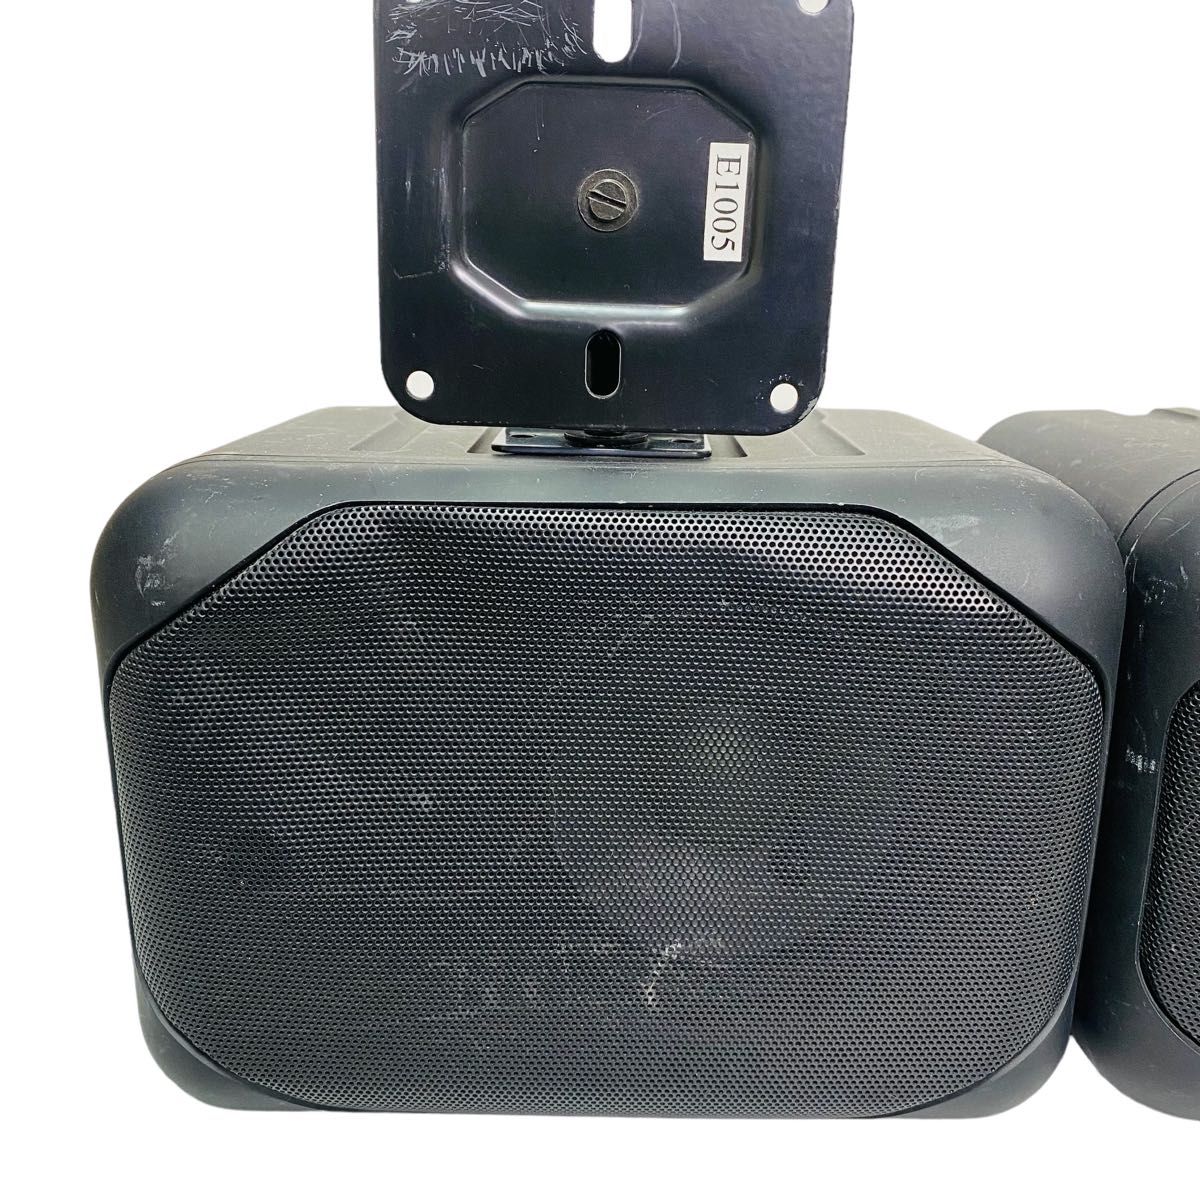 オースミ電機 AV-635/CCD スピーカー型防犯カメラ マイク内蔵